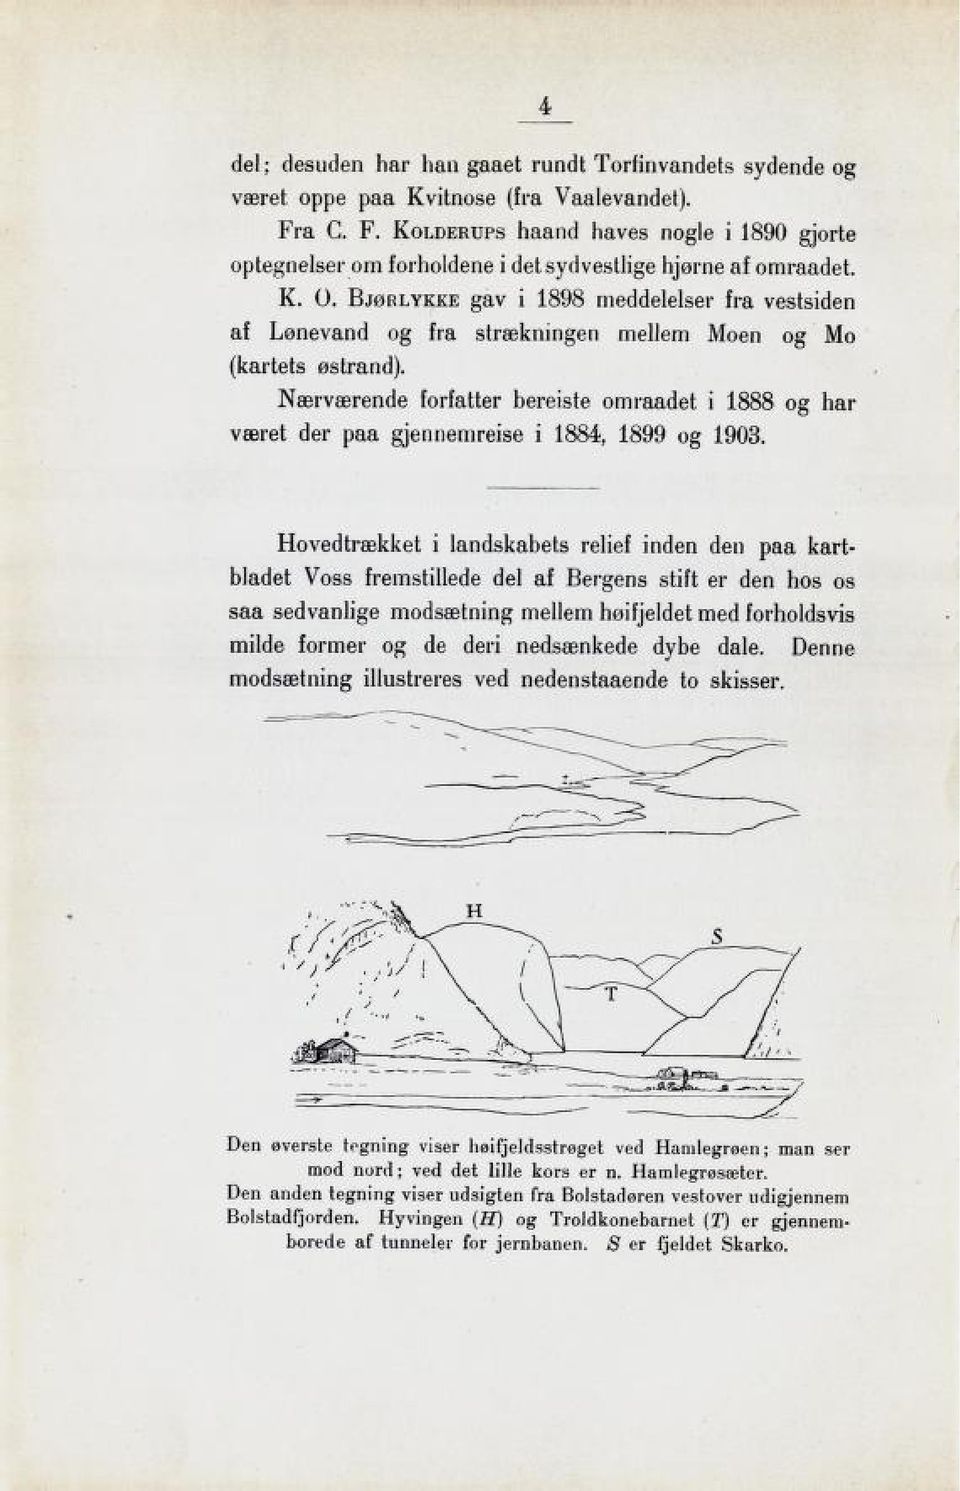 Bjørlykke gav i 1898 meddelelser fra vestsiden af Lønevand og fra strækningen mellem Moen og Mo (kartets østrand).